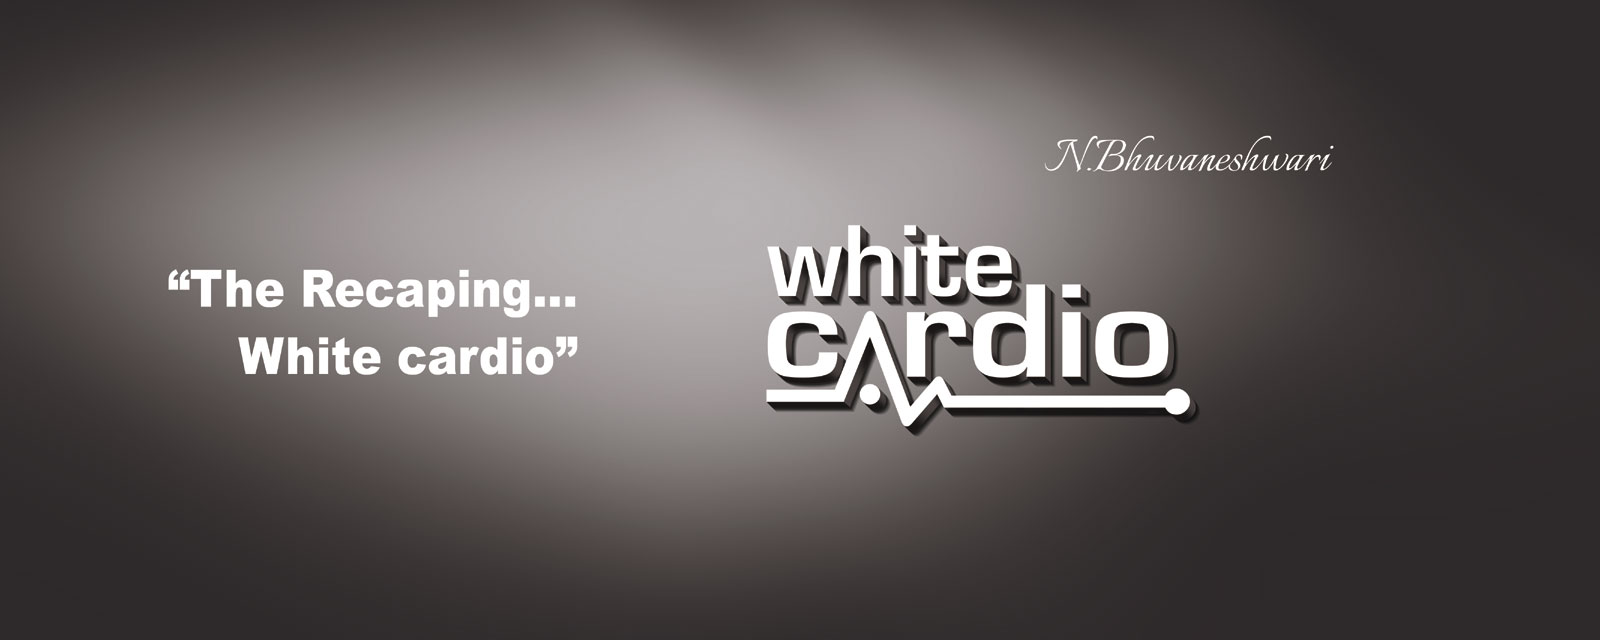 White Cardio